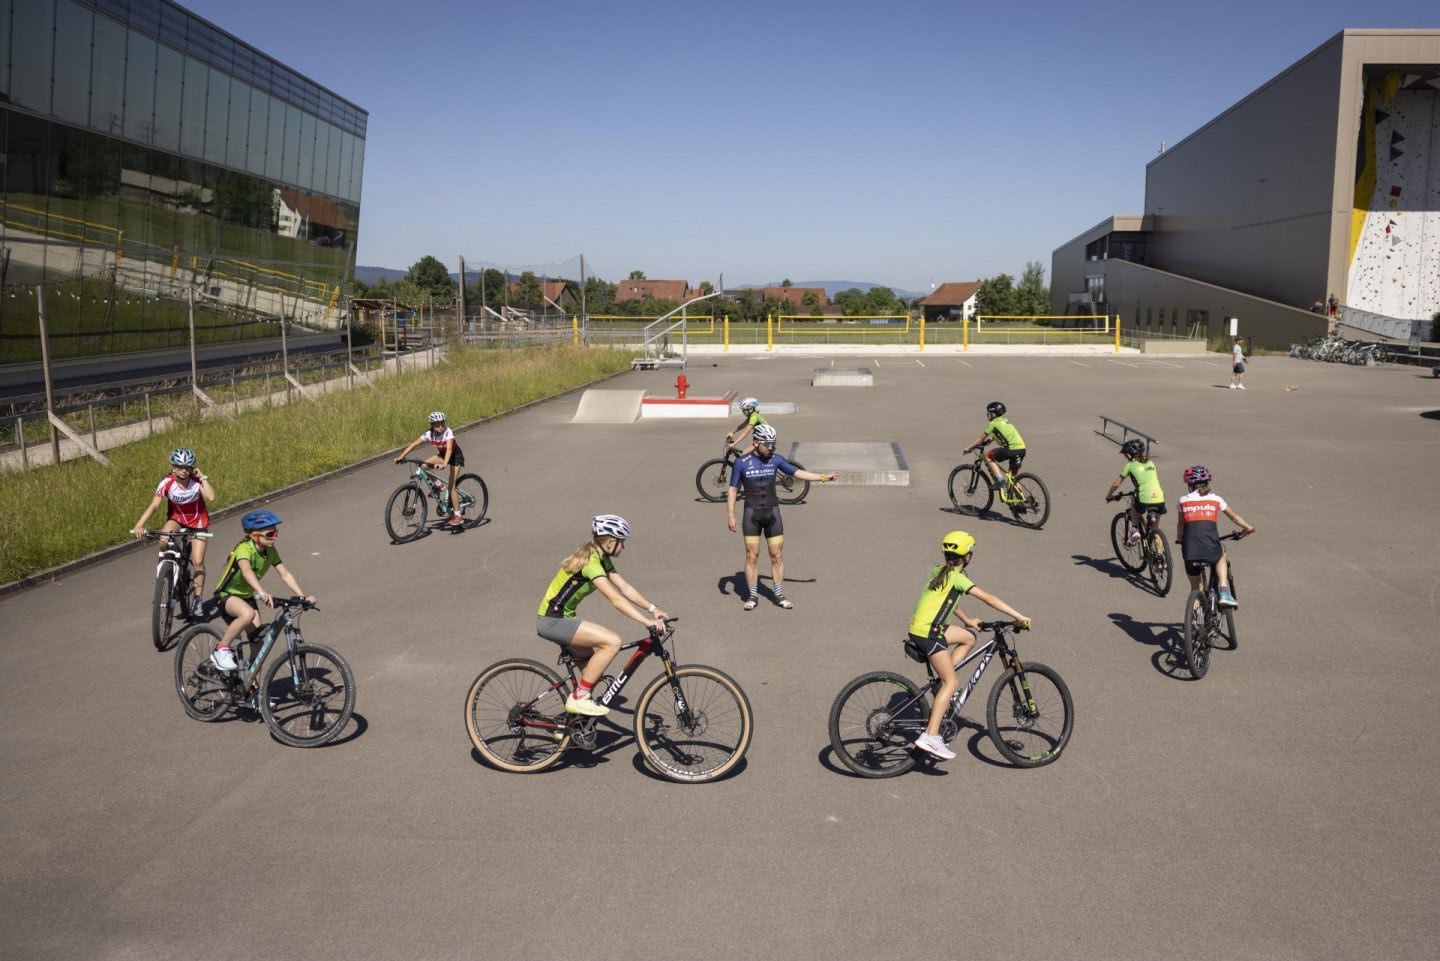 Des athlètes circulent à vélo en cercle sur une place de jeu bétonnée.